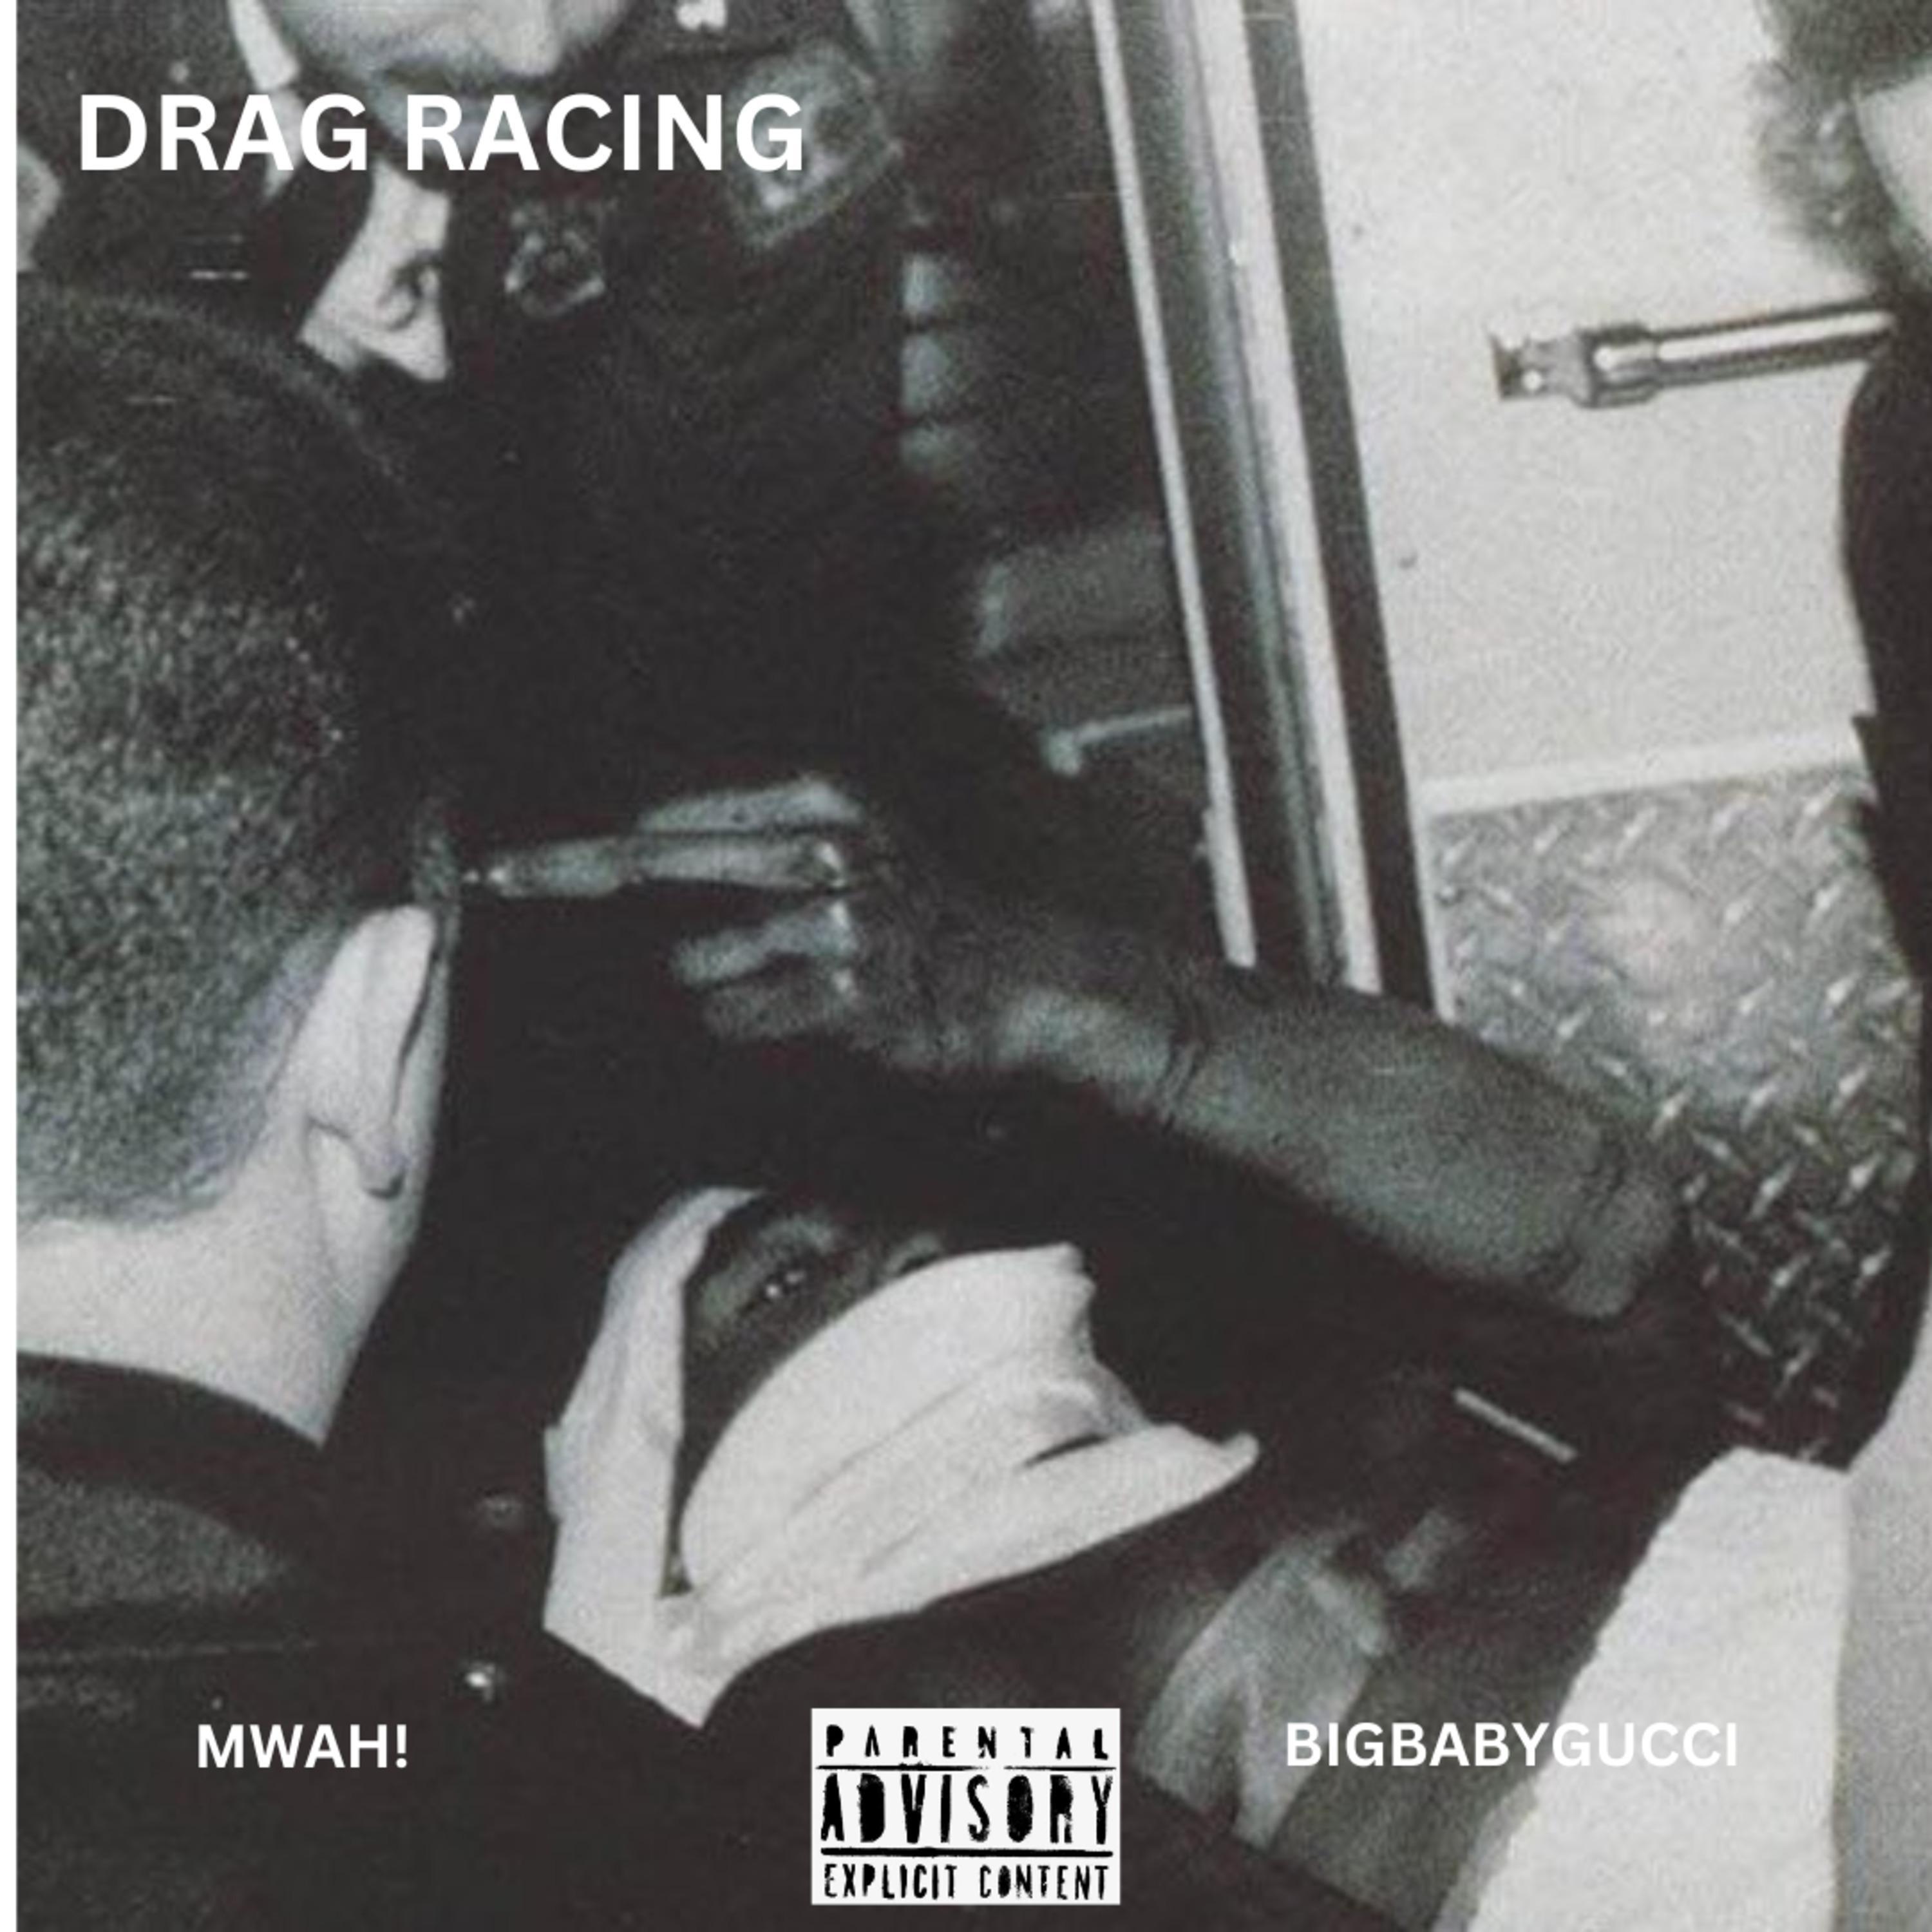 Mwah! - DRAG RACING (feat. BIGBABYGUCCI)